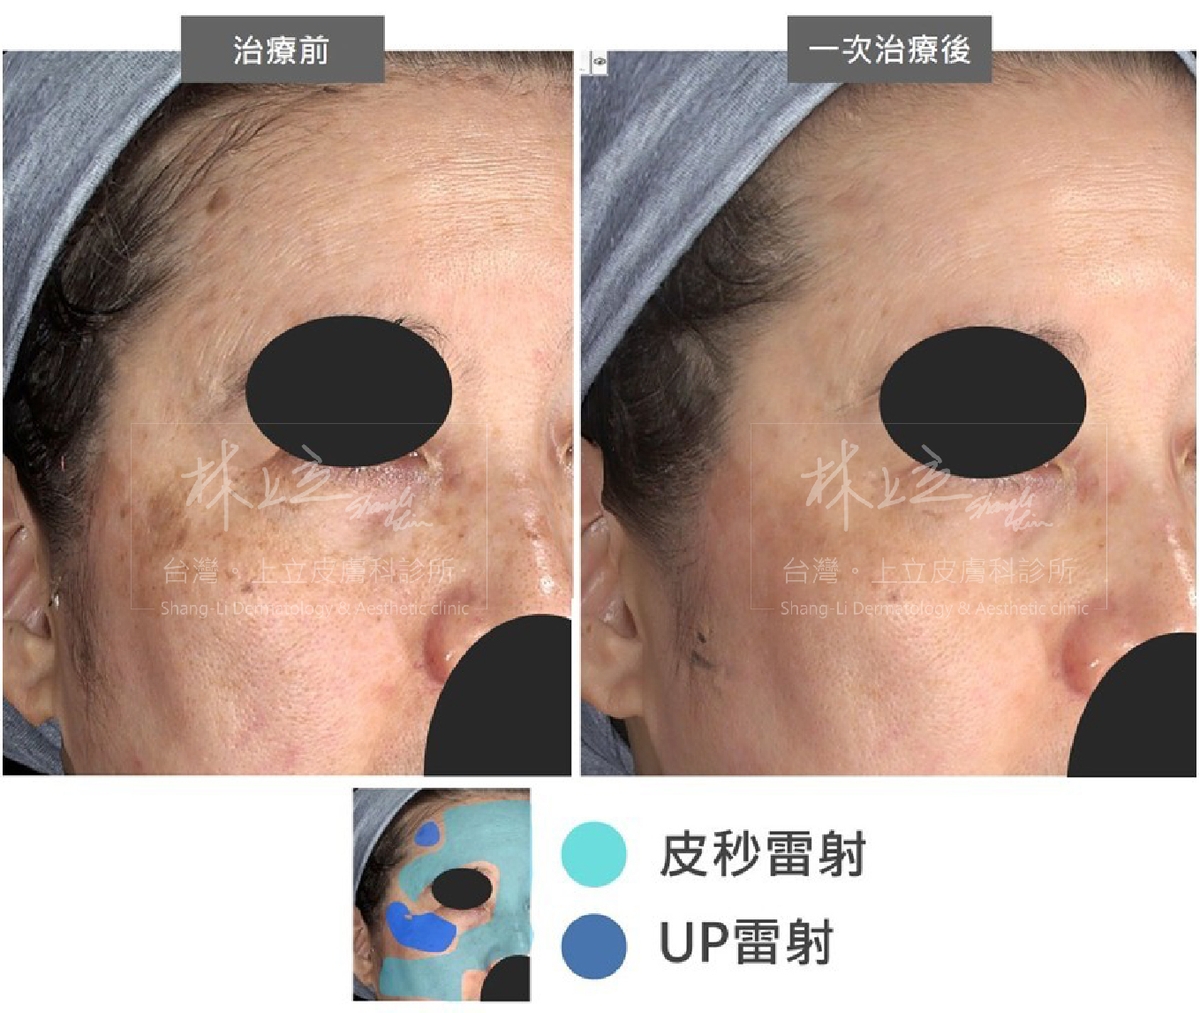 大面積施打PicoSure755蜂巢皮秒雷射；局部的老人斑則使用UP雷射進行治療，更有效率地解決皮膚上的各種問題